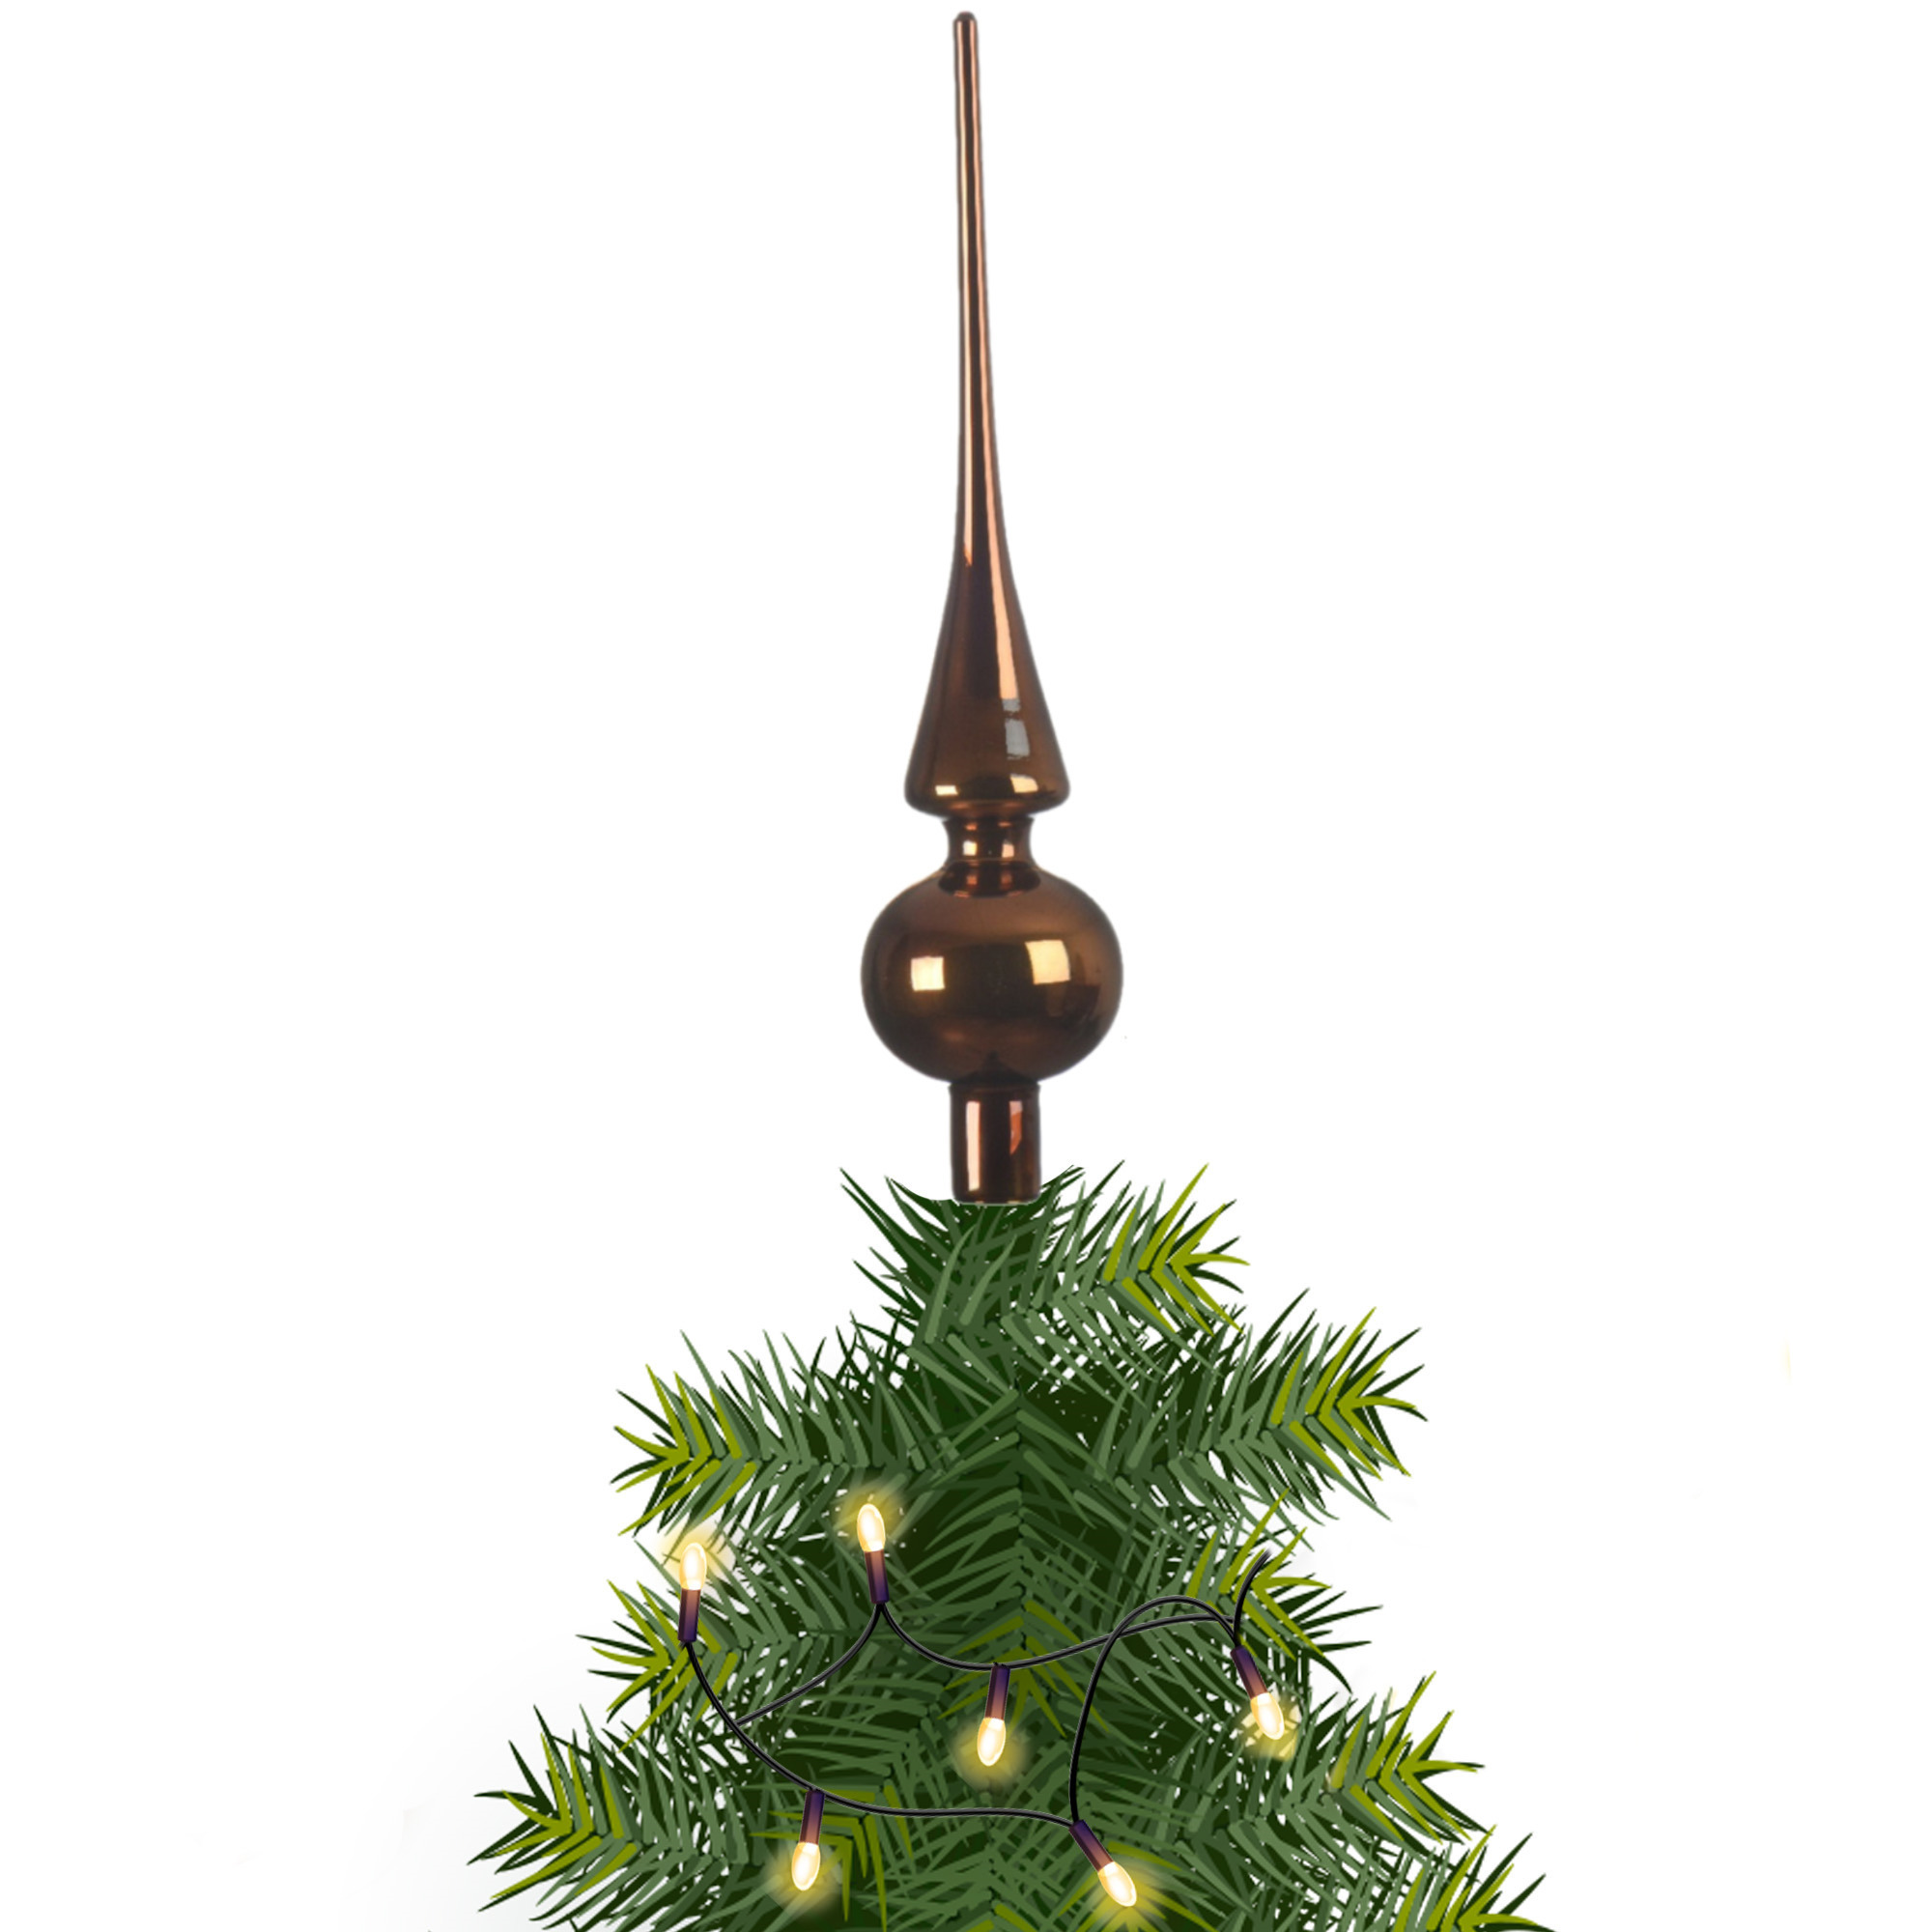 Kerstboom glazen piek bruin glans 26 cm